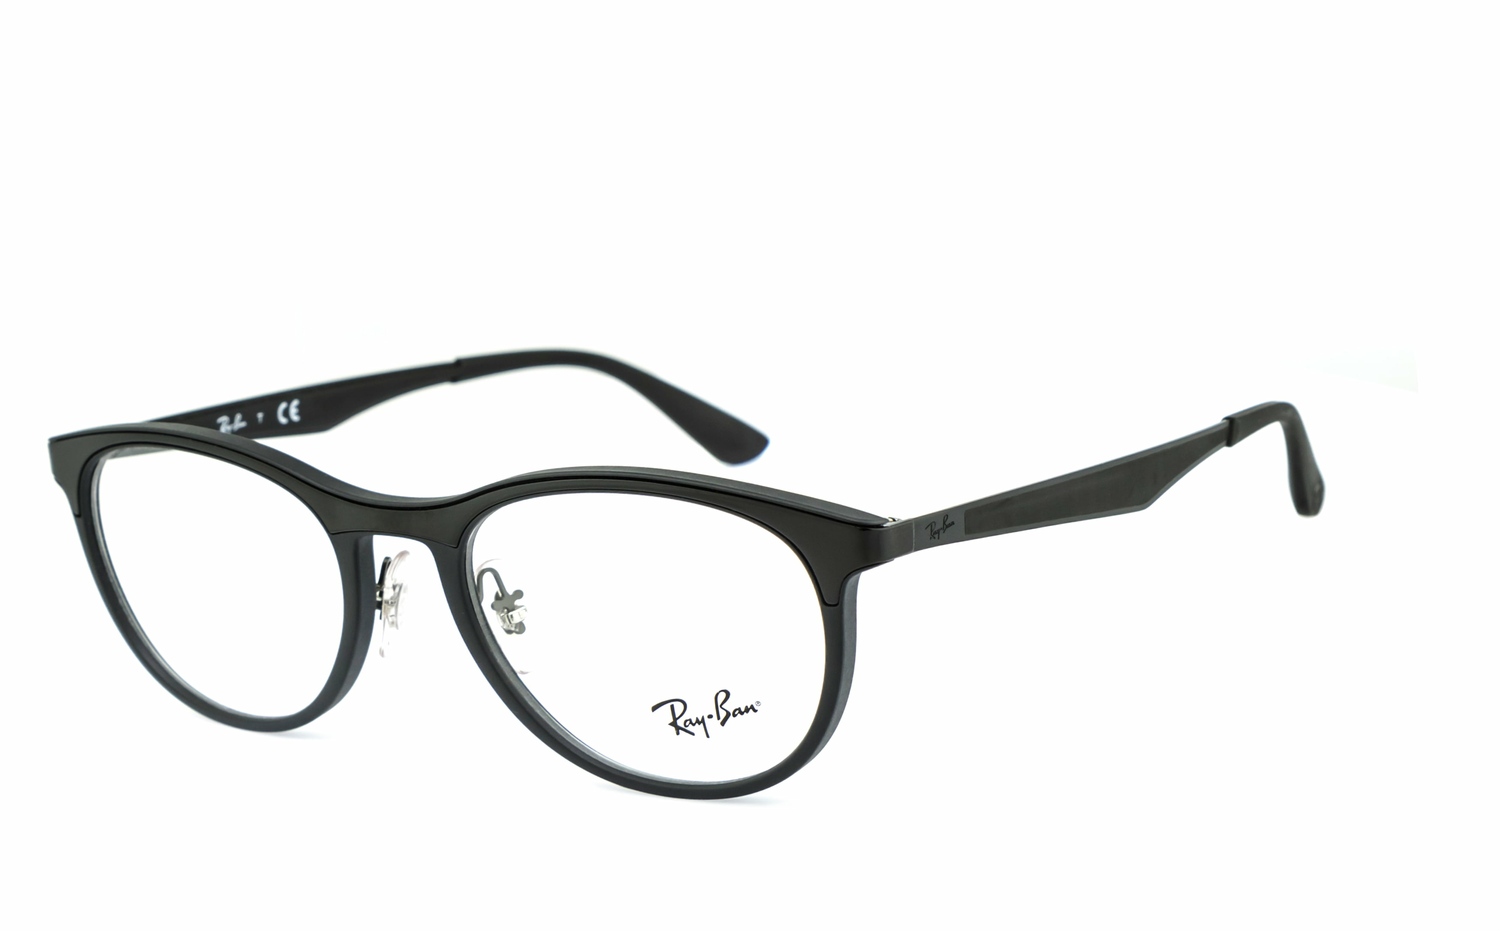 Ray-Ban | RB7116  Brille, Brillengestell, Brillenfassung, Korrekturbrille, Korrekturfassung